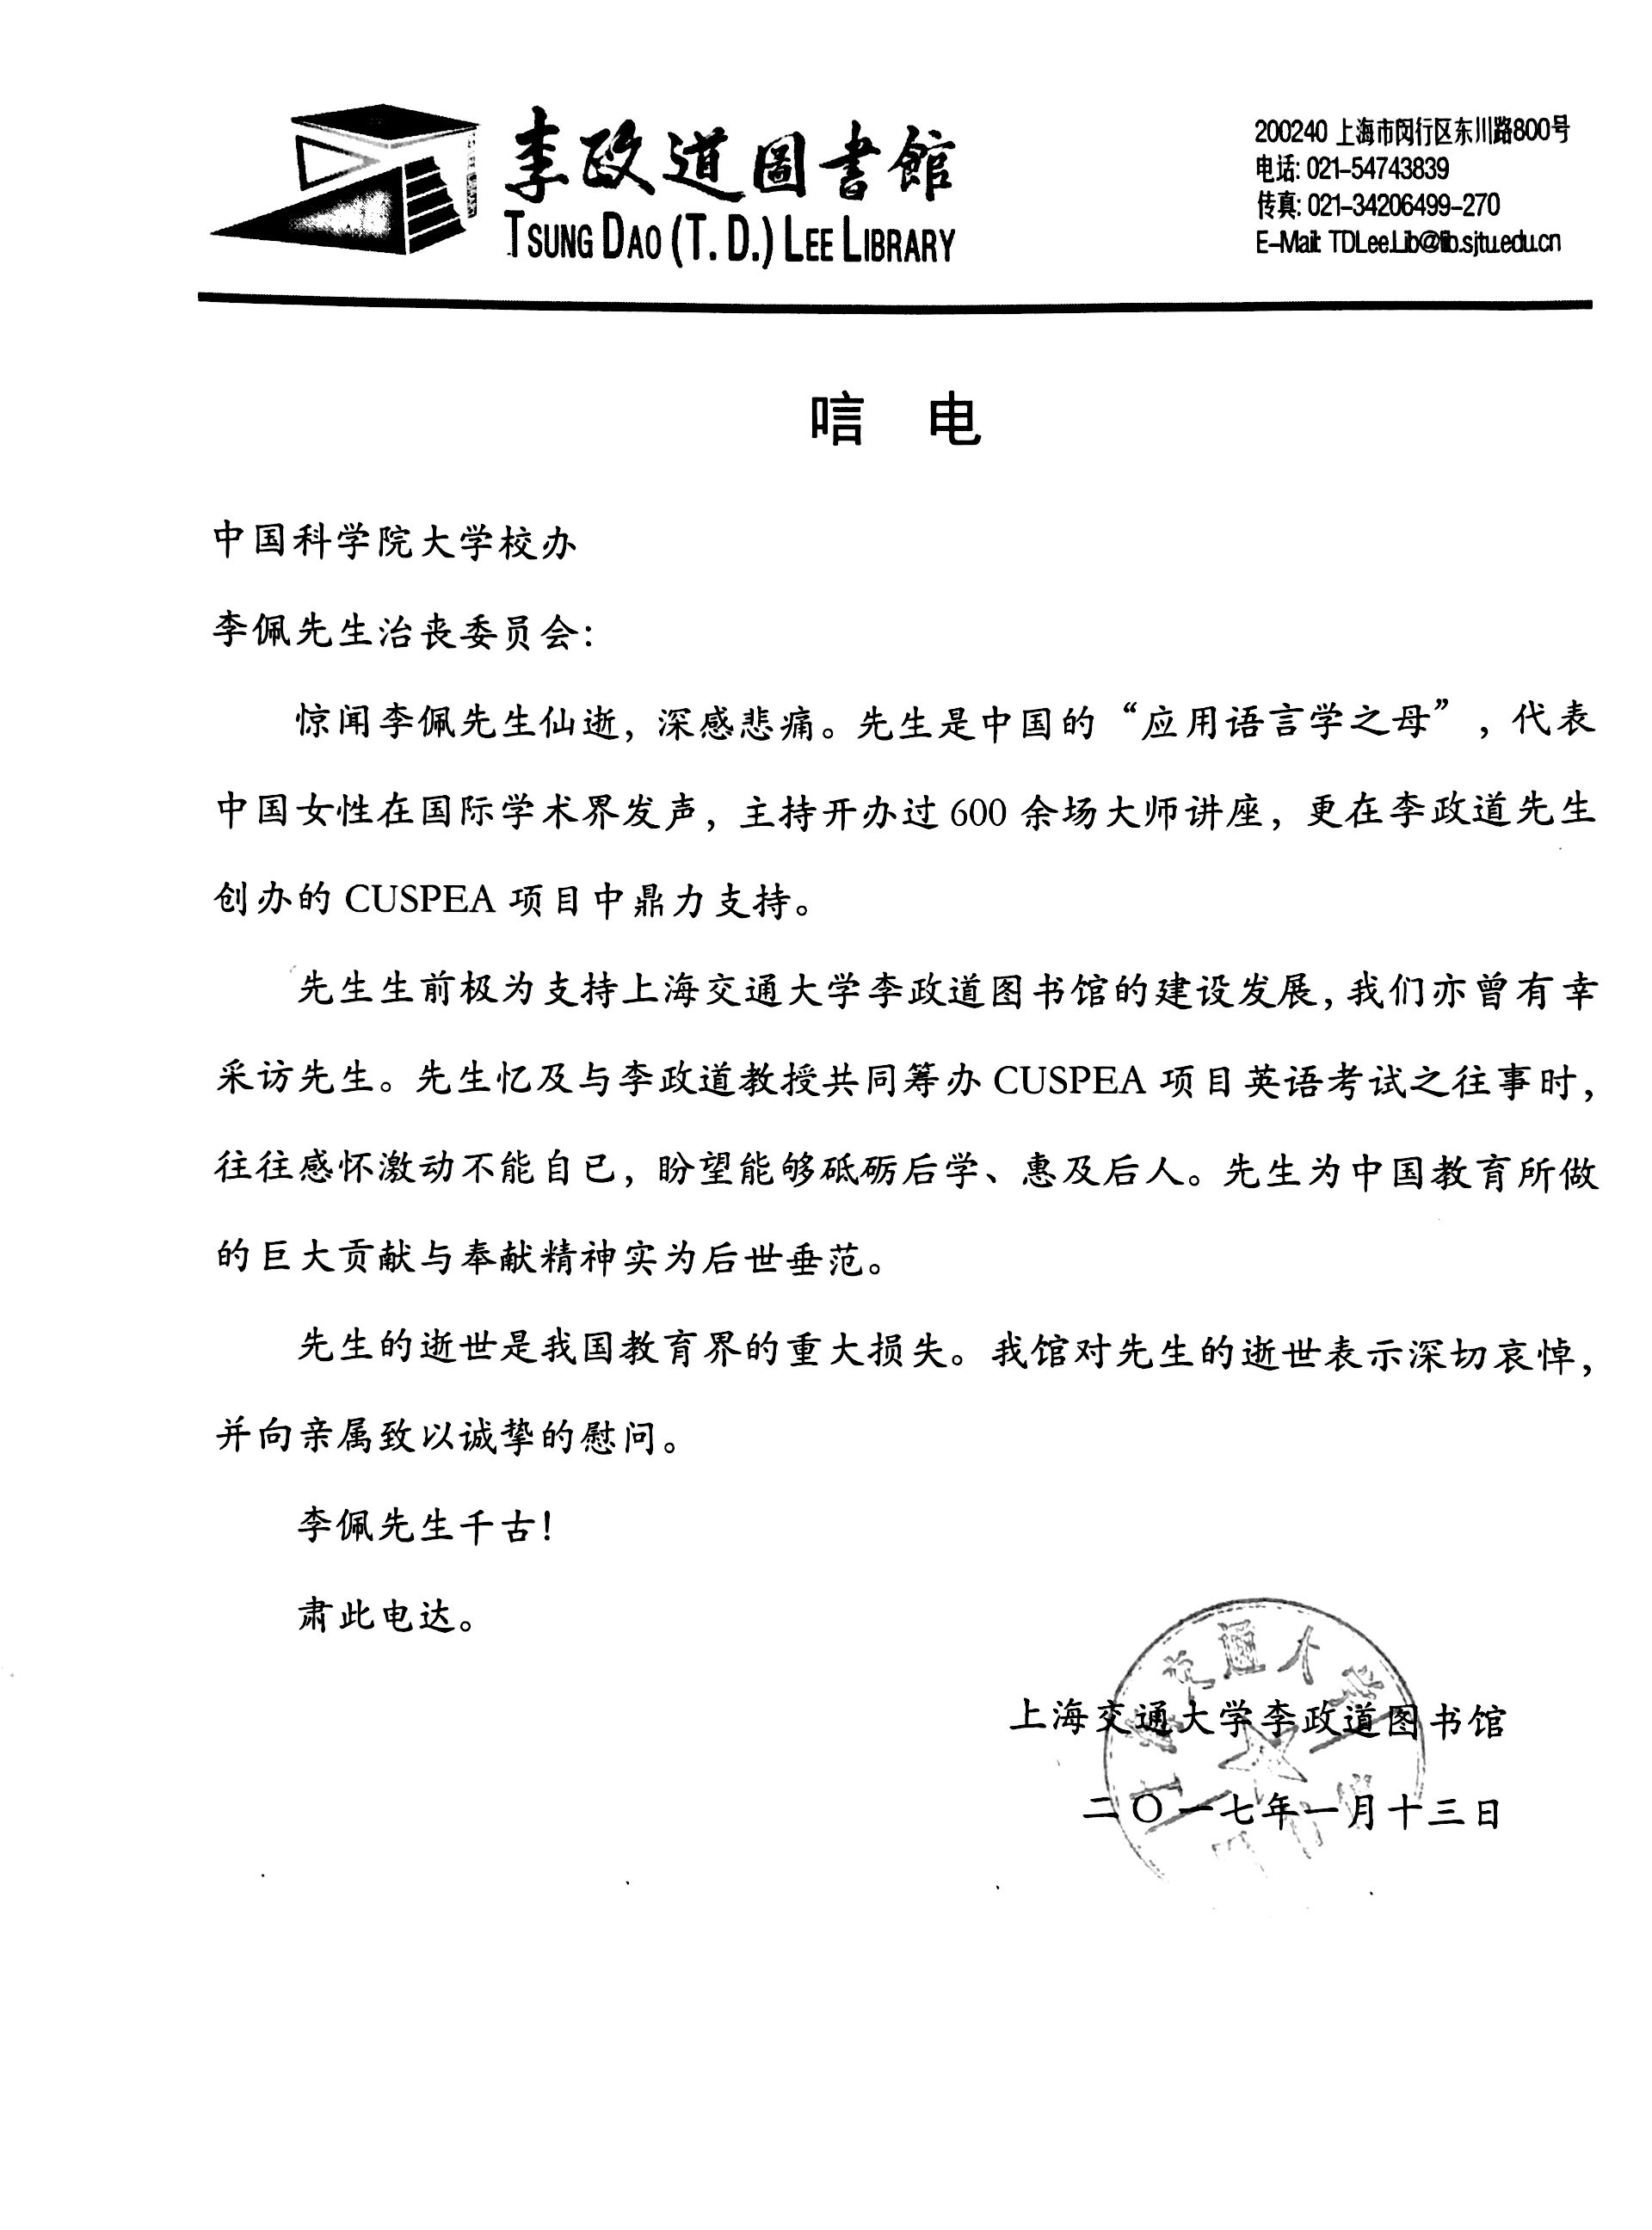 上海交通大学李政道图书馆致李佩先生治丧委员会唁电